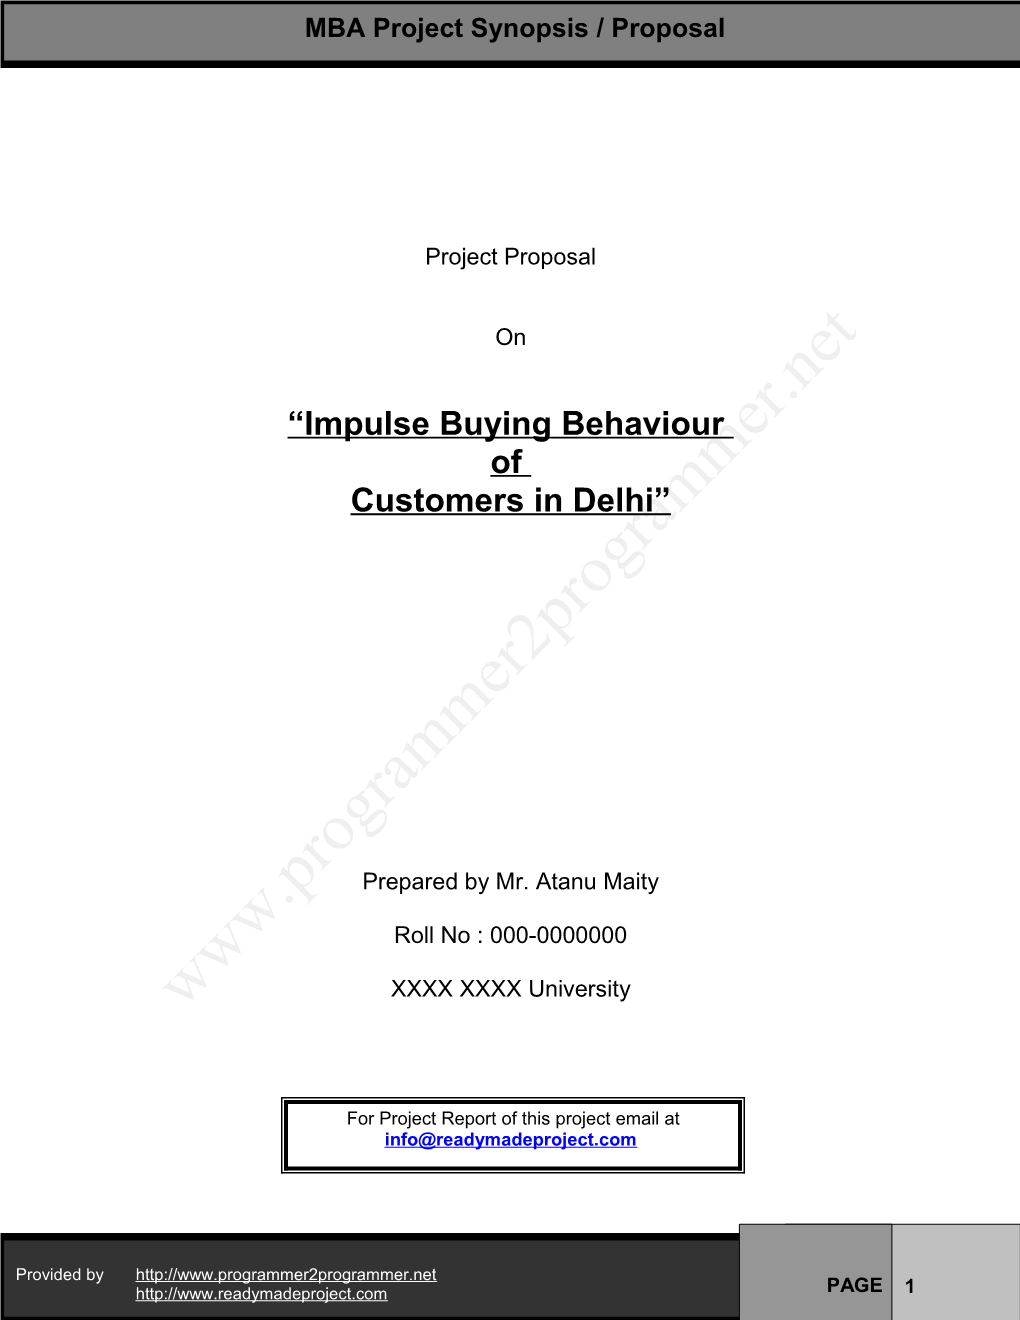 Impulse Buying Behaviour of Customers in Delhi